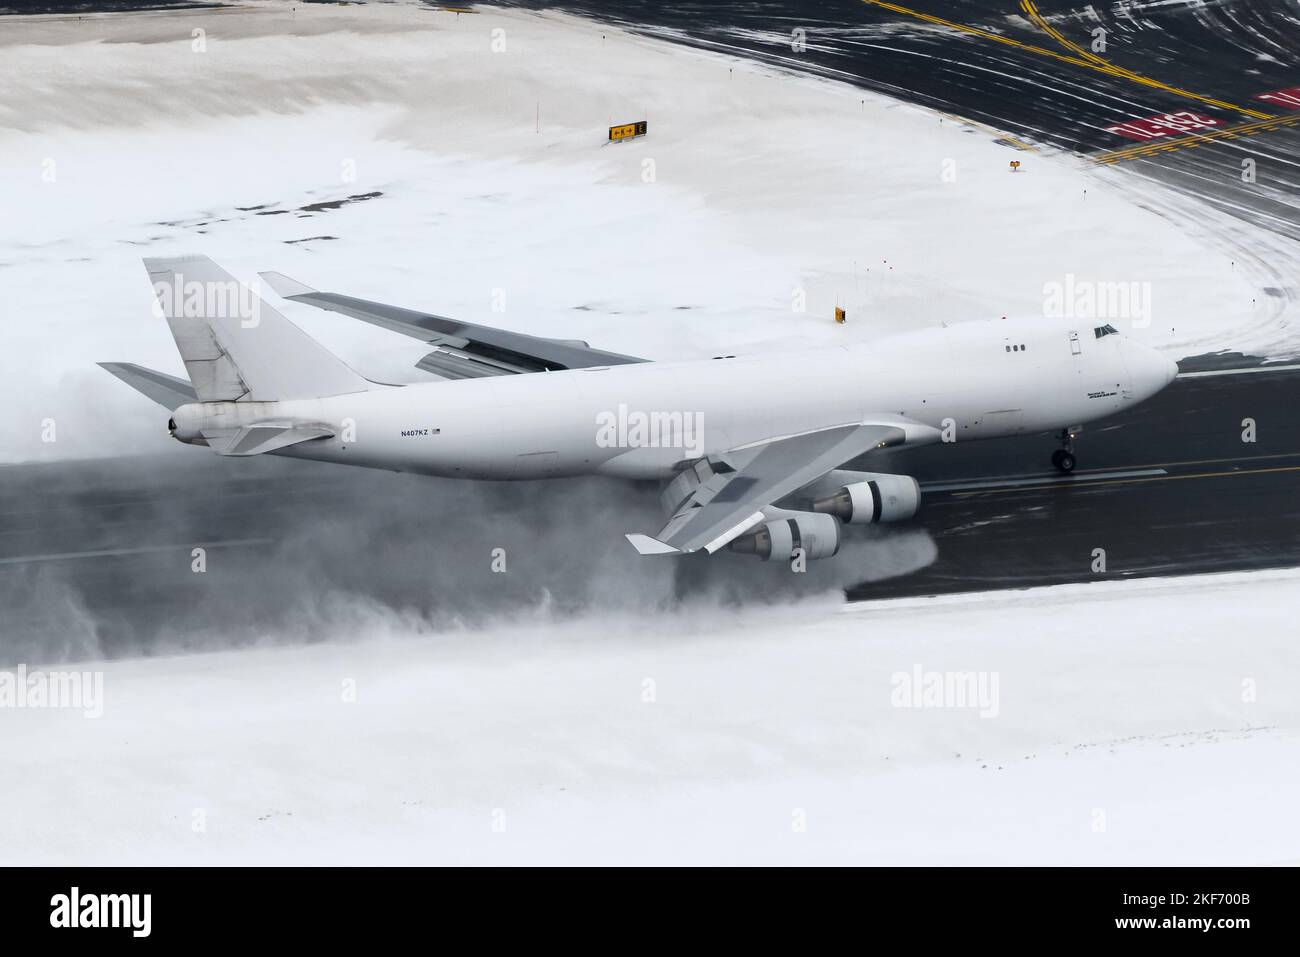 Boeing 747-Frachtflugzeug landete nach einem schweren Schneefall am Flughafen Anchorage. Flugzeug 747-400F von Atlas Air mit umgekehrtem Schub des Motors. Stockfoto